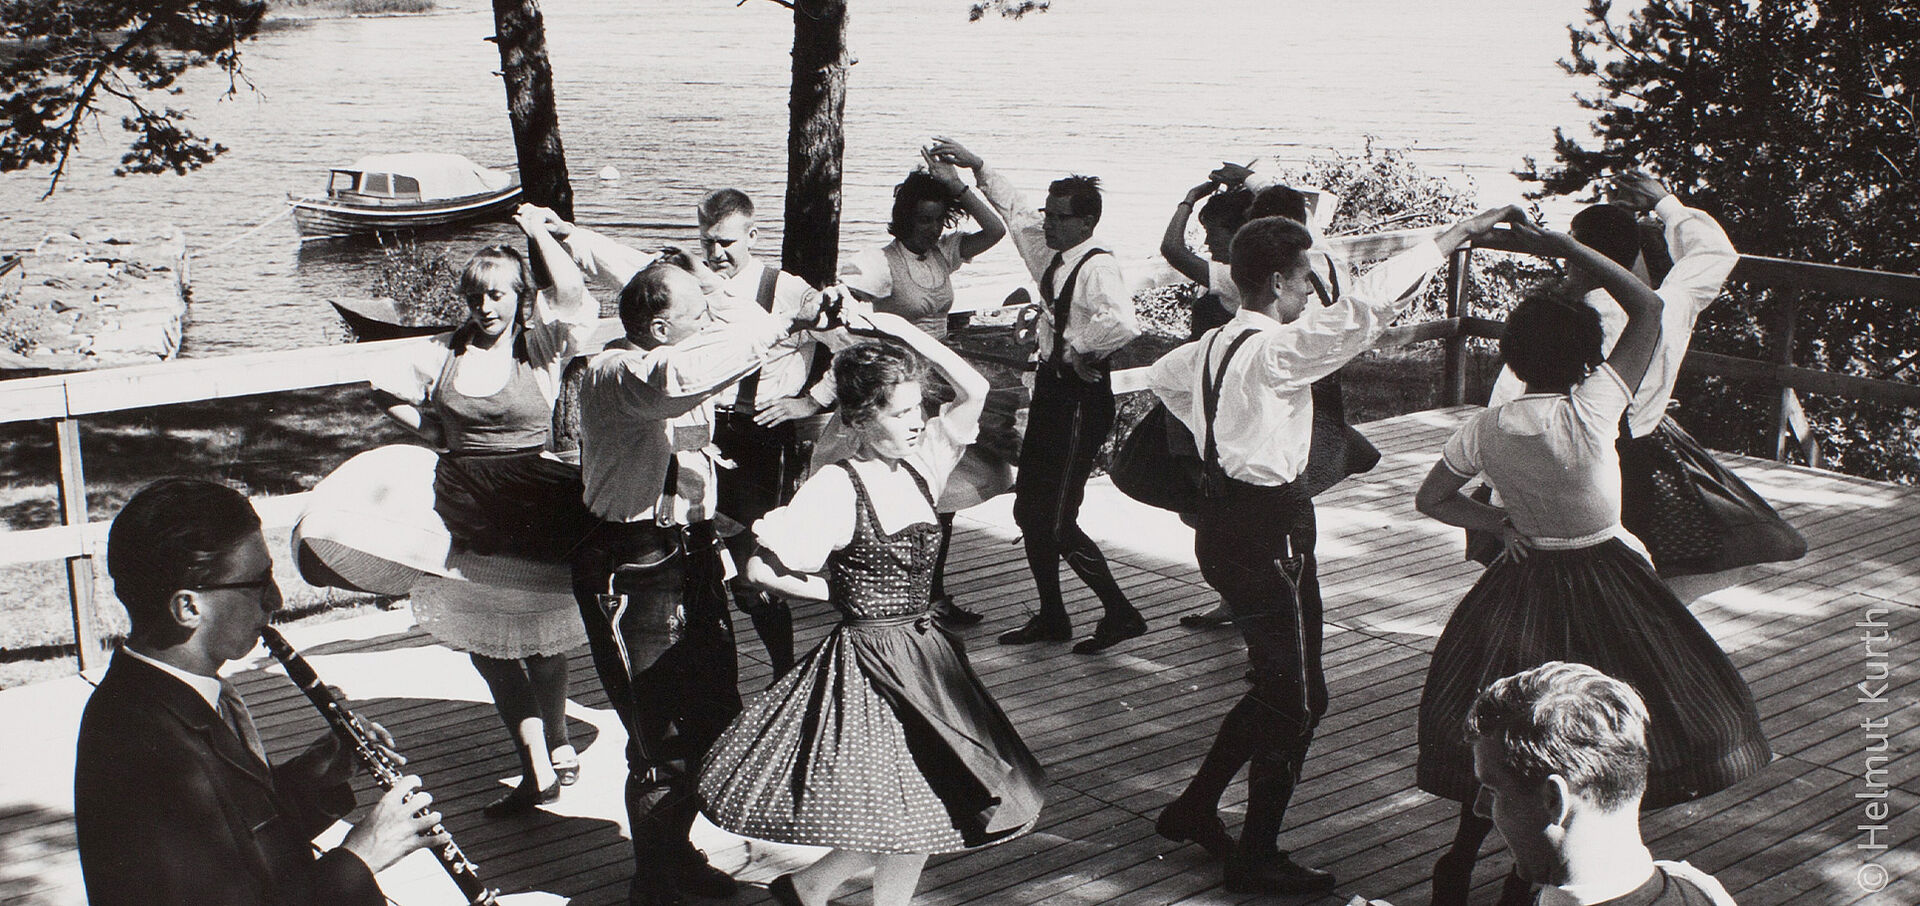 Schwarz-weißes Foto von einer Gruppe von Tanzpaaren in Tracht, dahinter ein See.